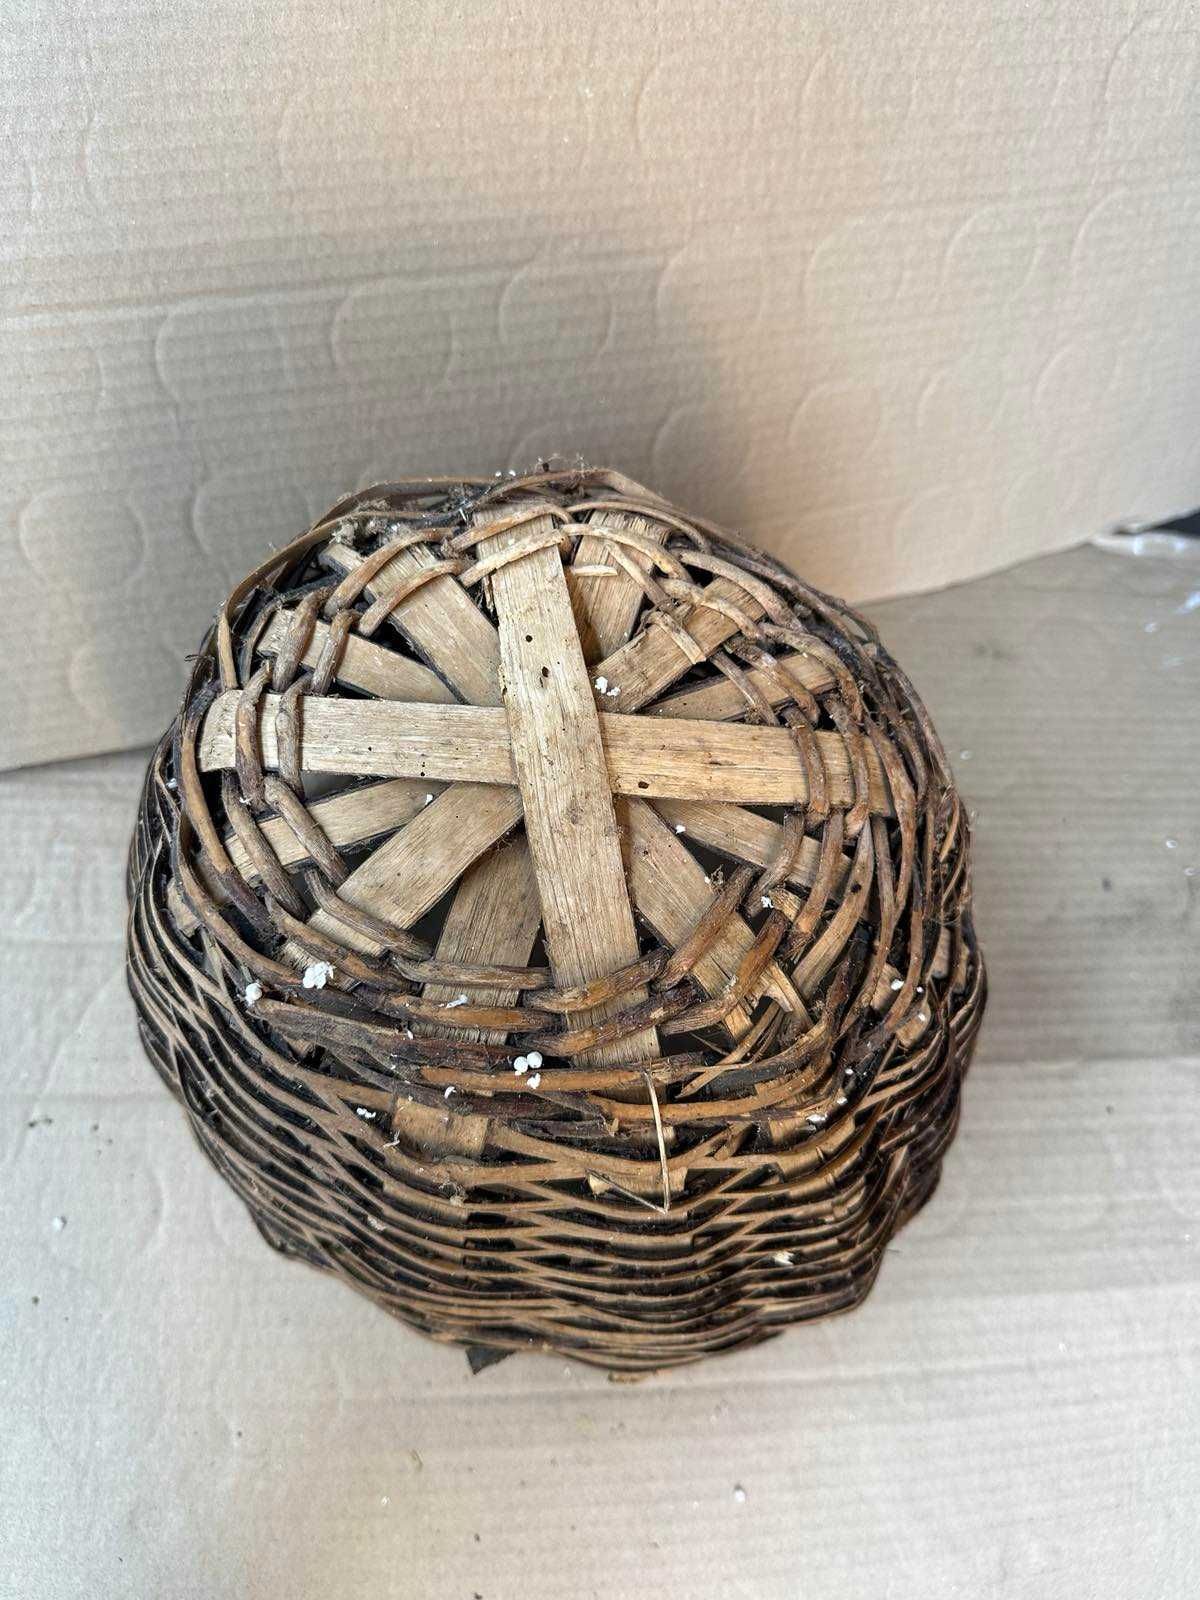 Автентична дървена кошница - изплетена от клони